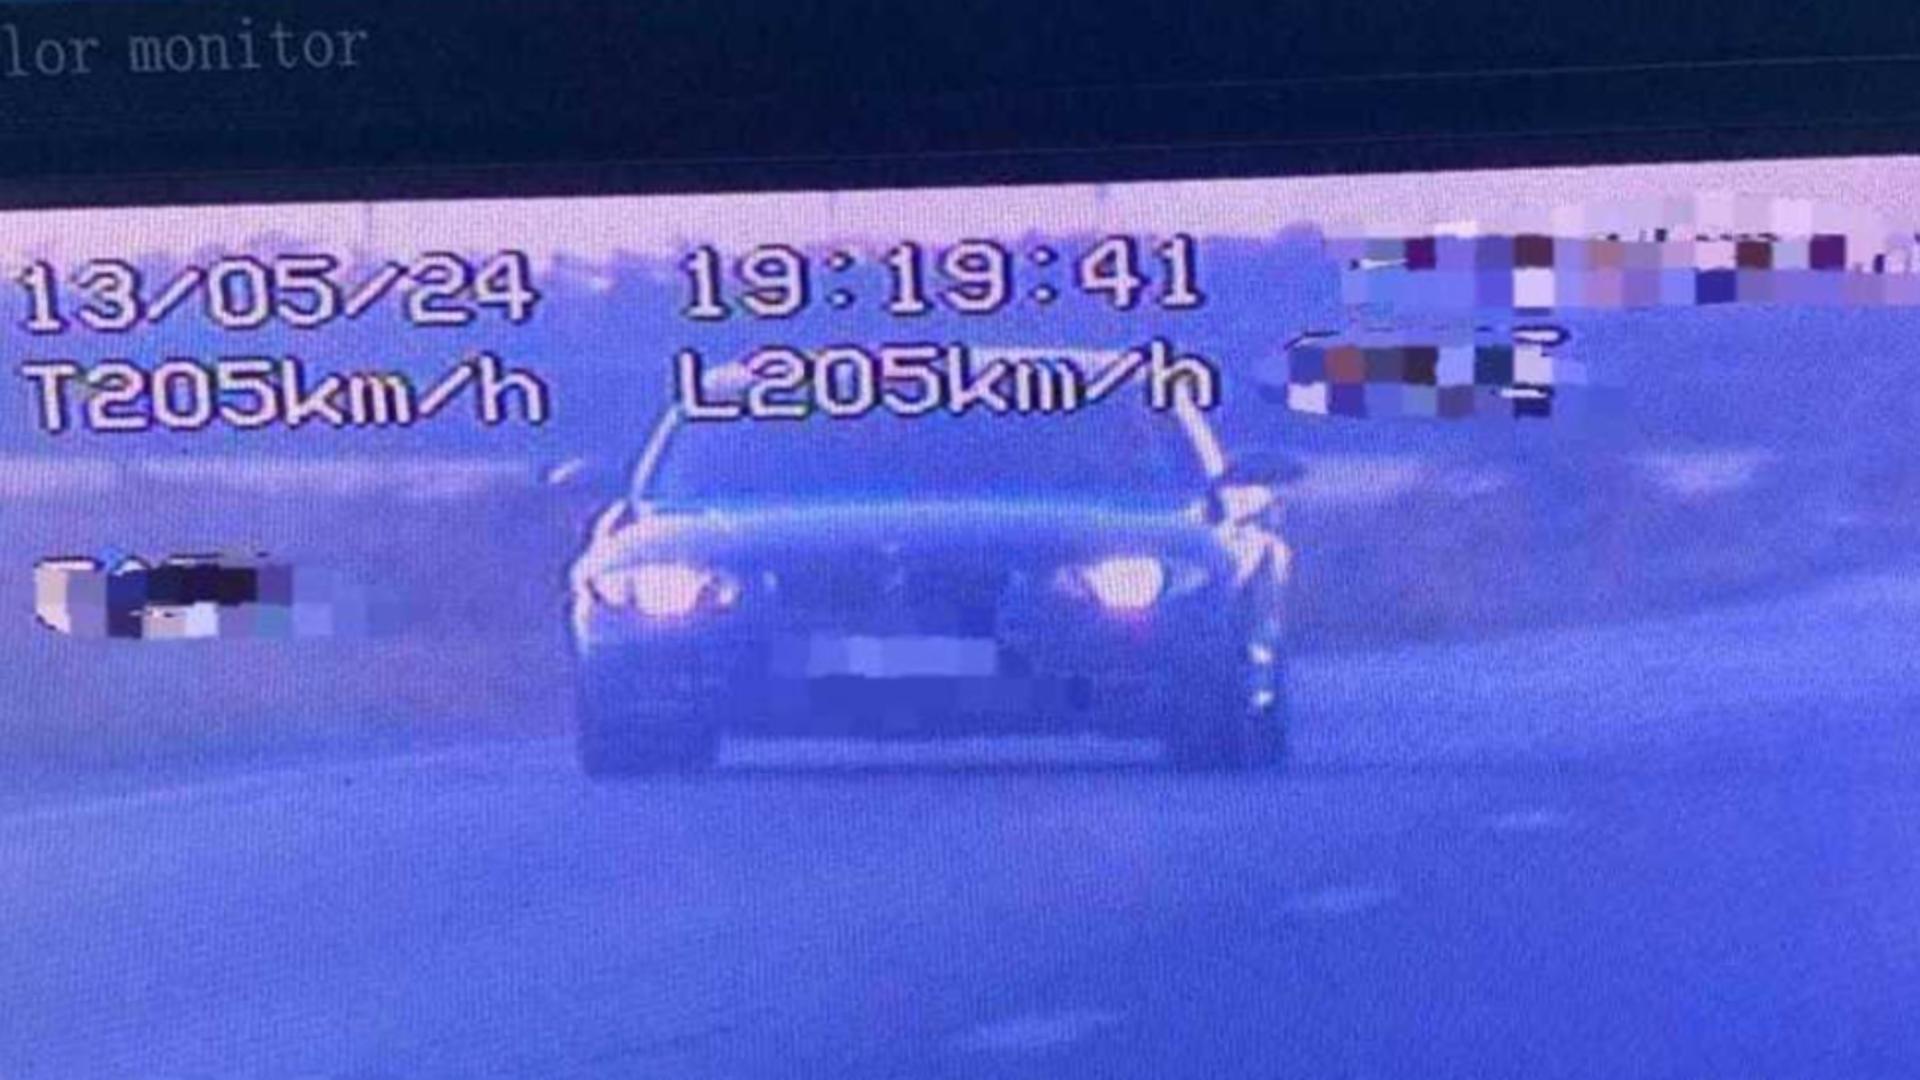 Șofer de doar 19 ani, prins cu 205 kilometri/h pe un drum județean unde limita este de 70 km/h